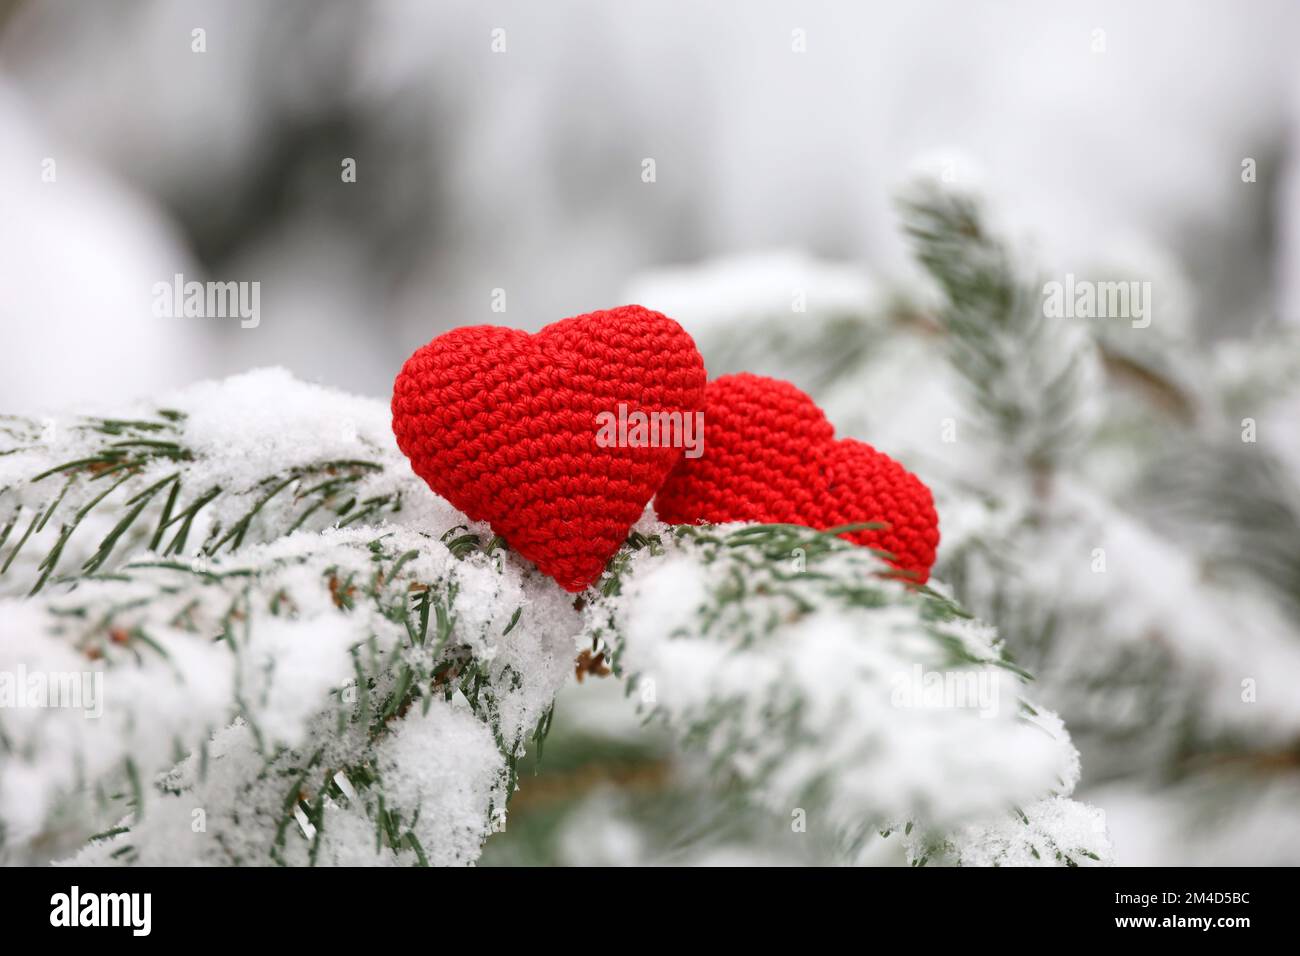 Zwei gestrickte Liebesherzen auf Tannenzweigen, die im Winterwald mit Schnee bedeckt sind. Konzept der Weihnachtsfeier oder des Valentinstages Stockfoto